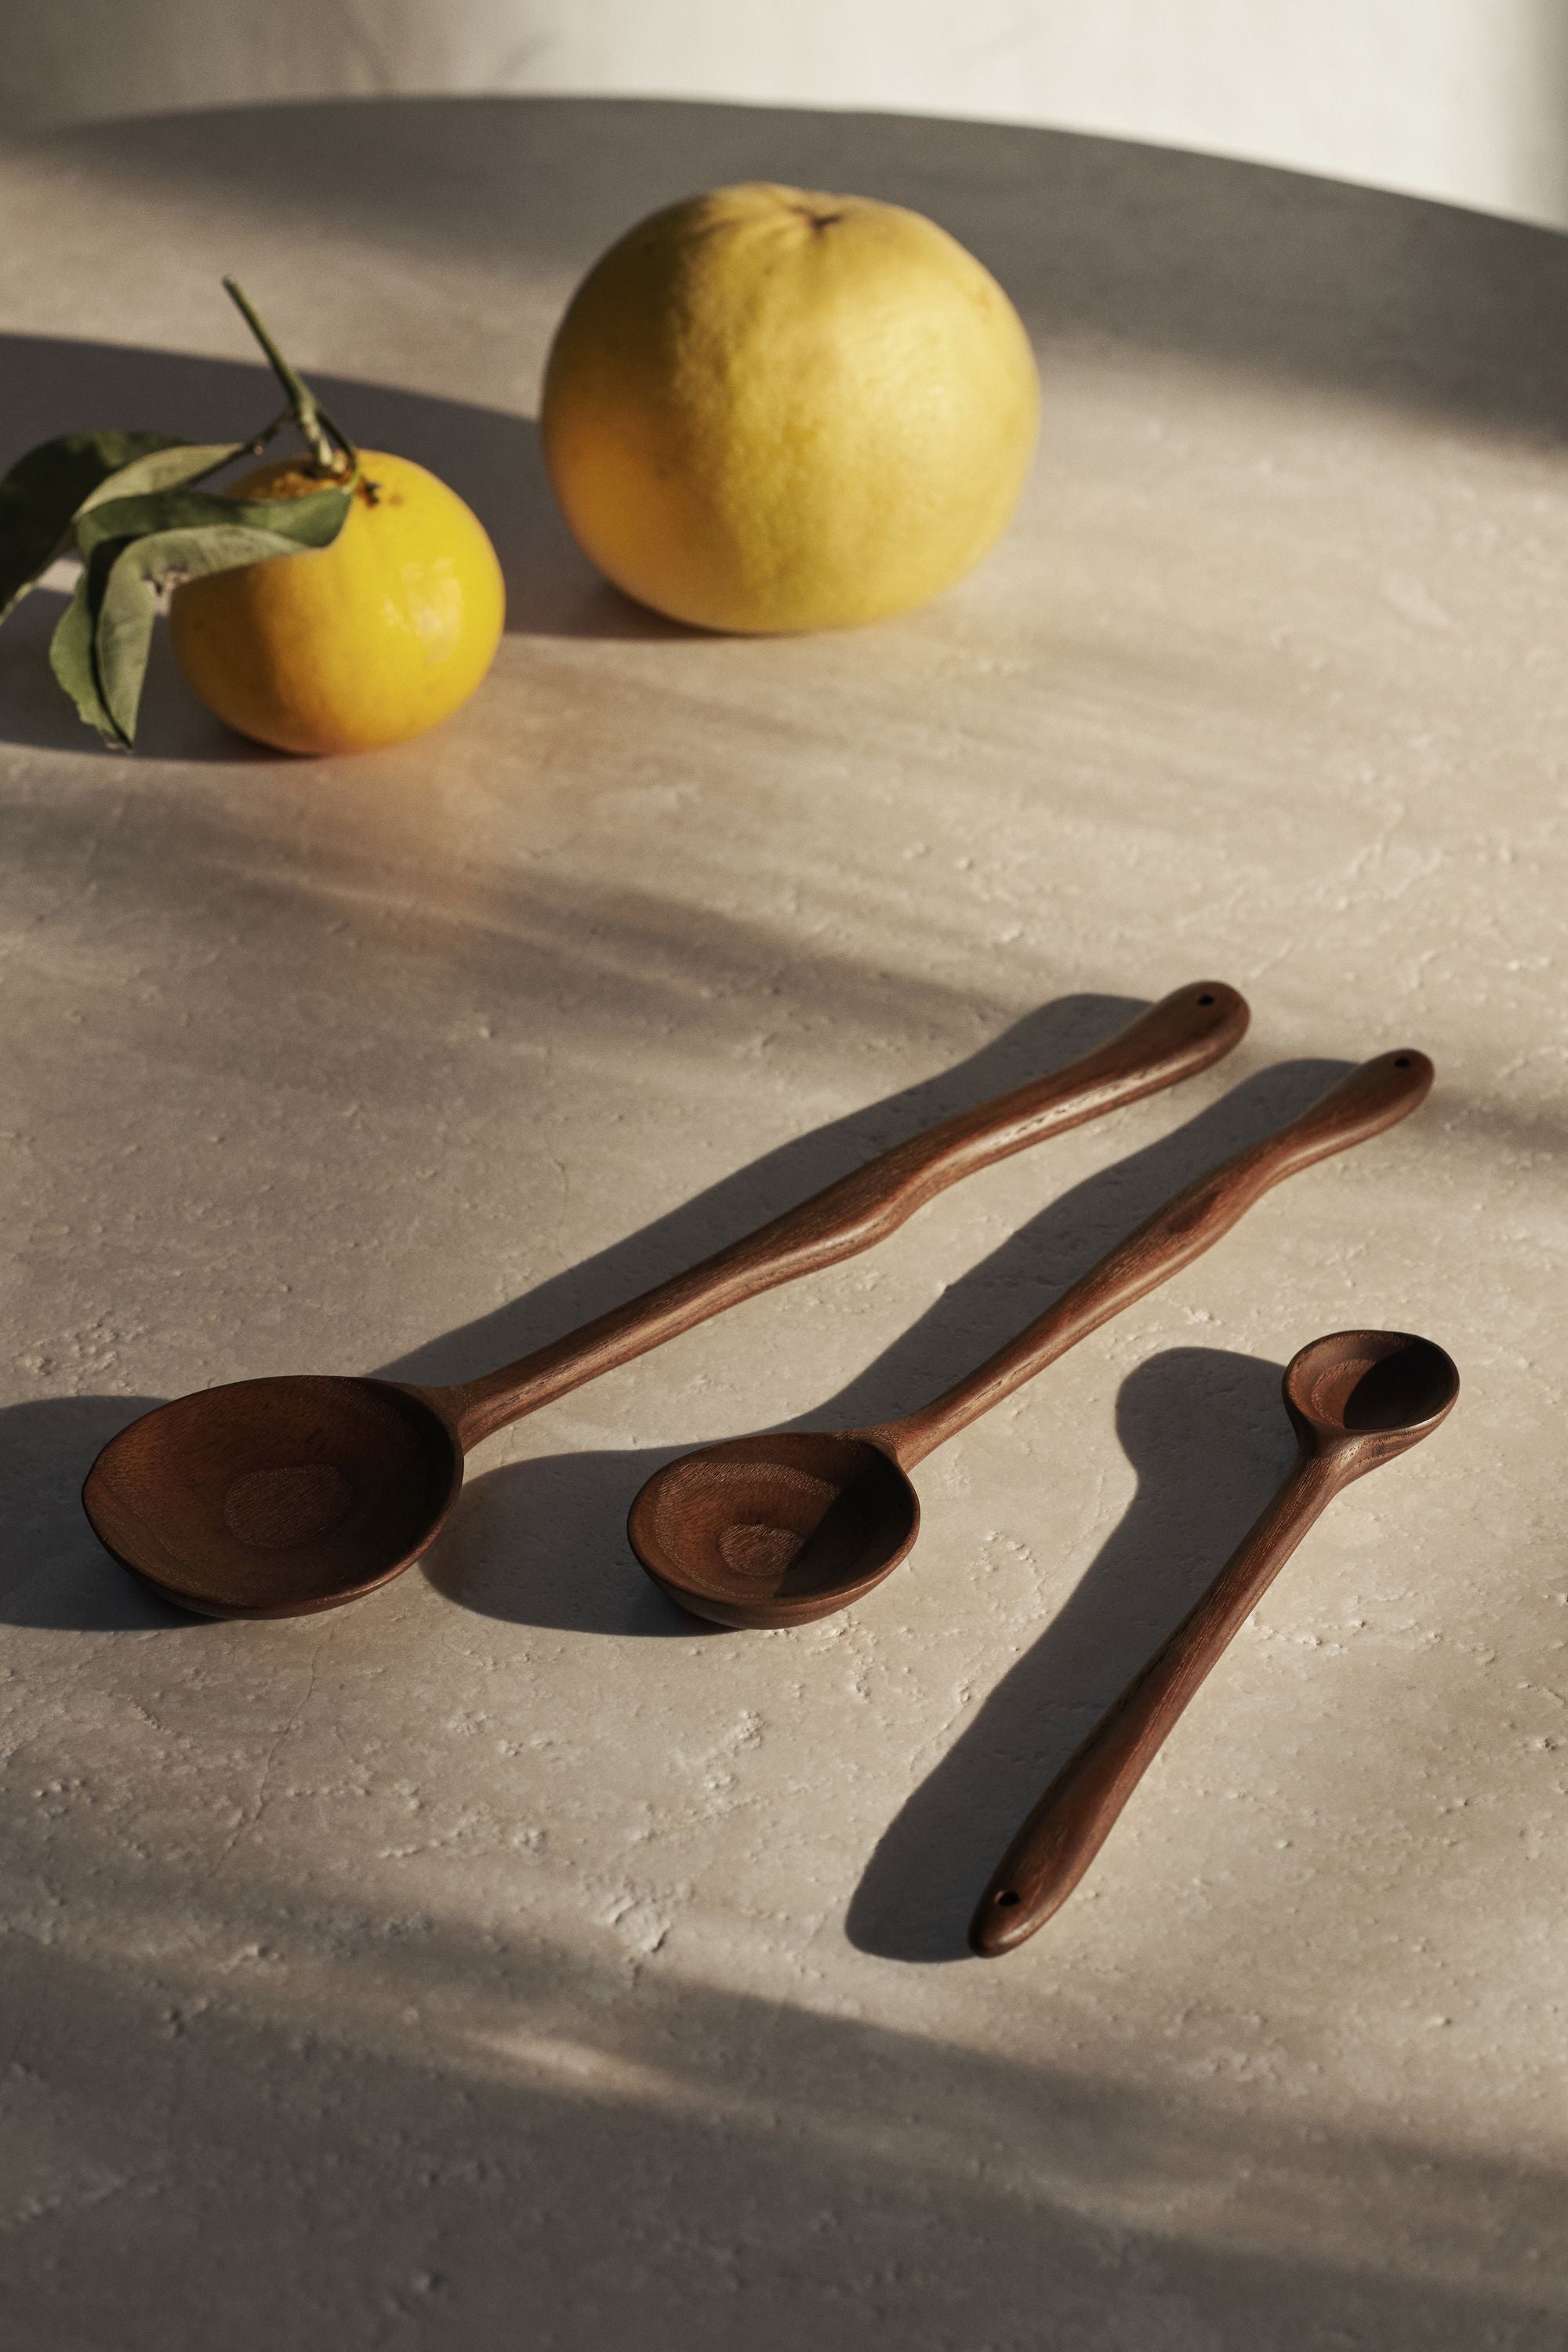 Ferm Living Meander Spoon, 30 cm, mørkebrun